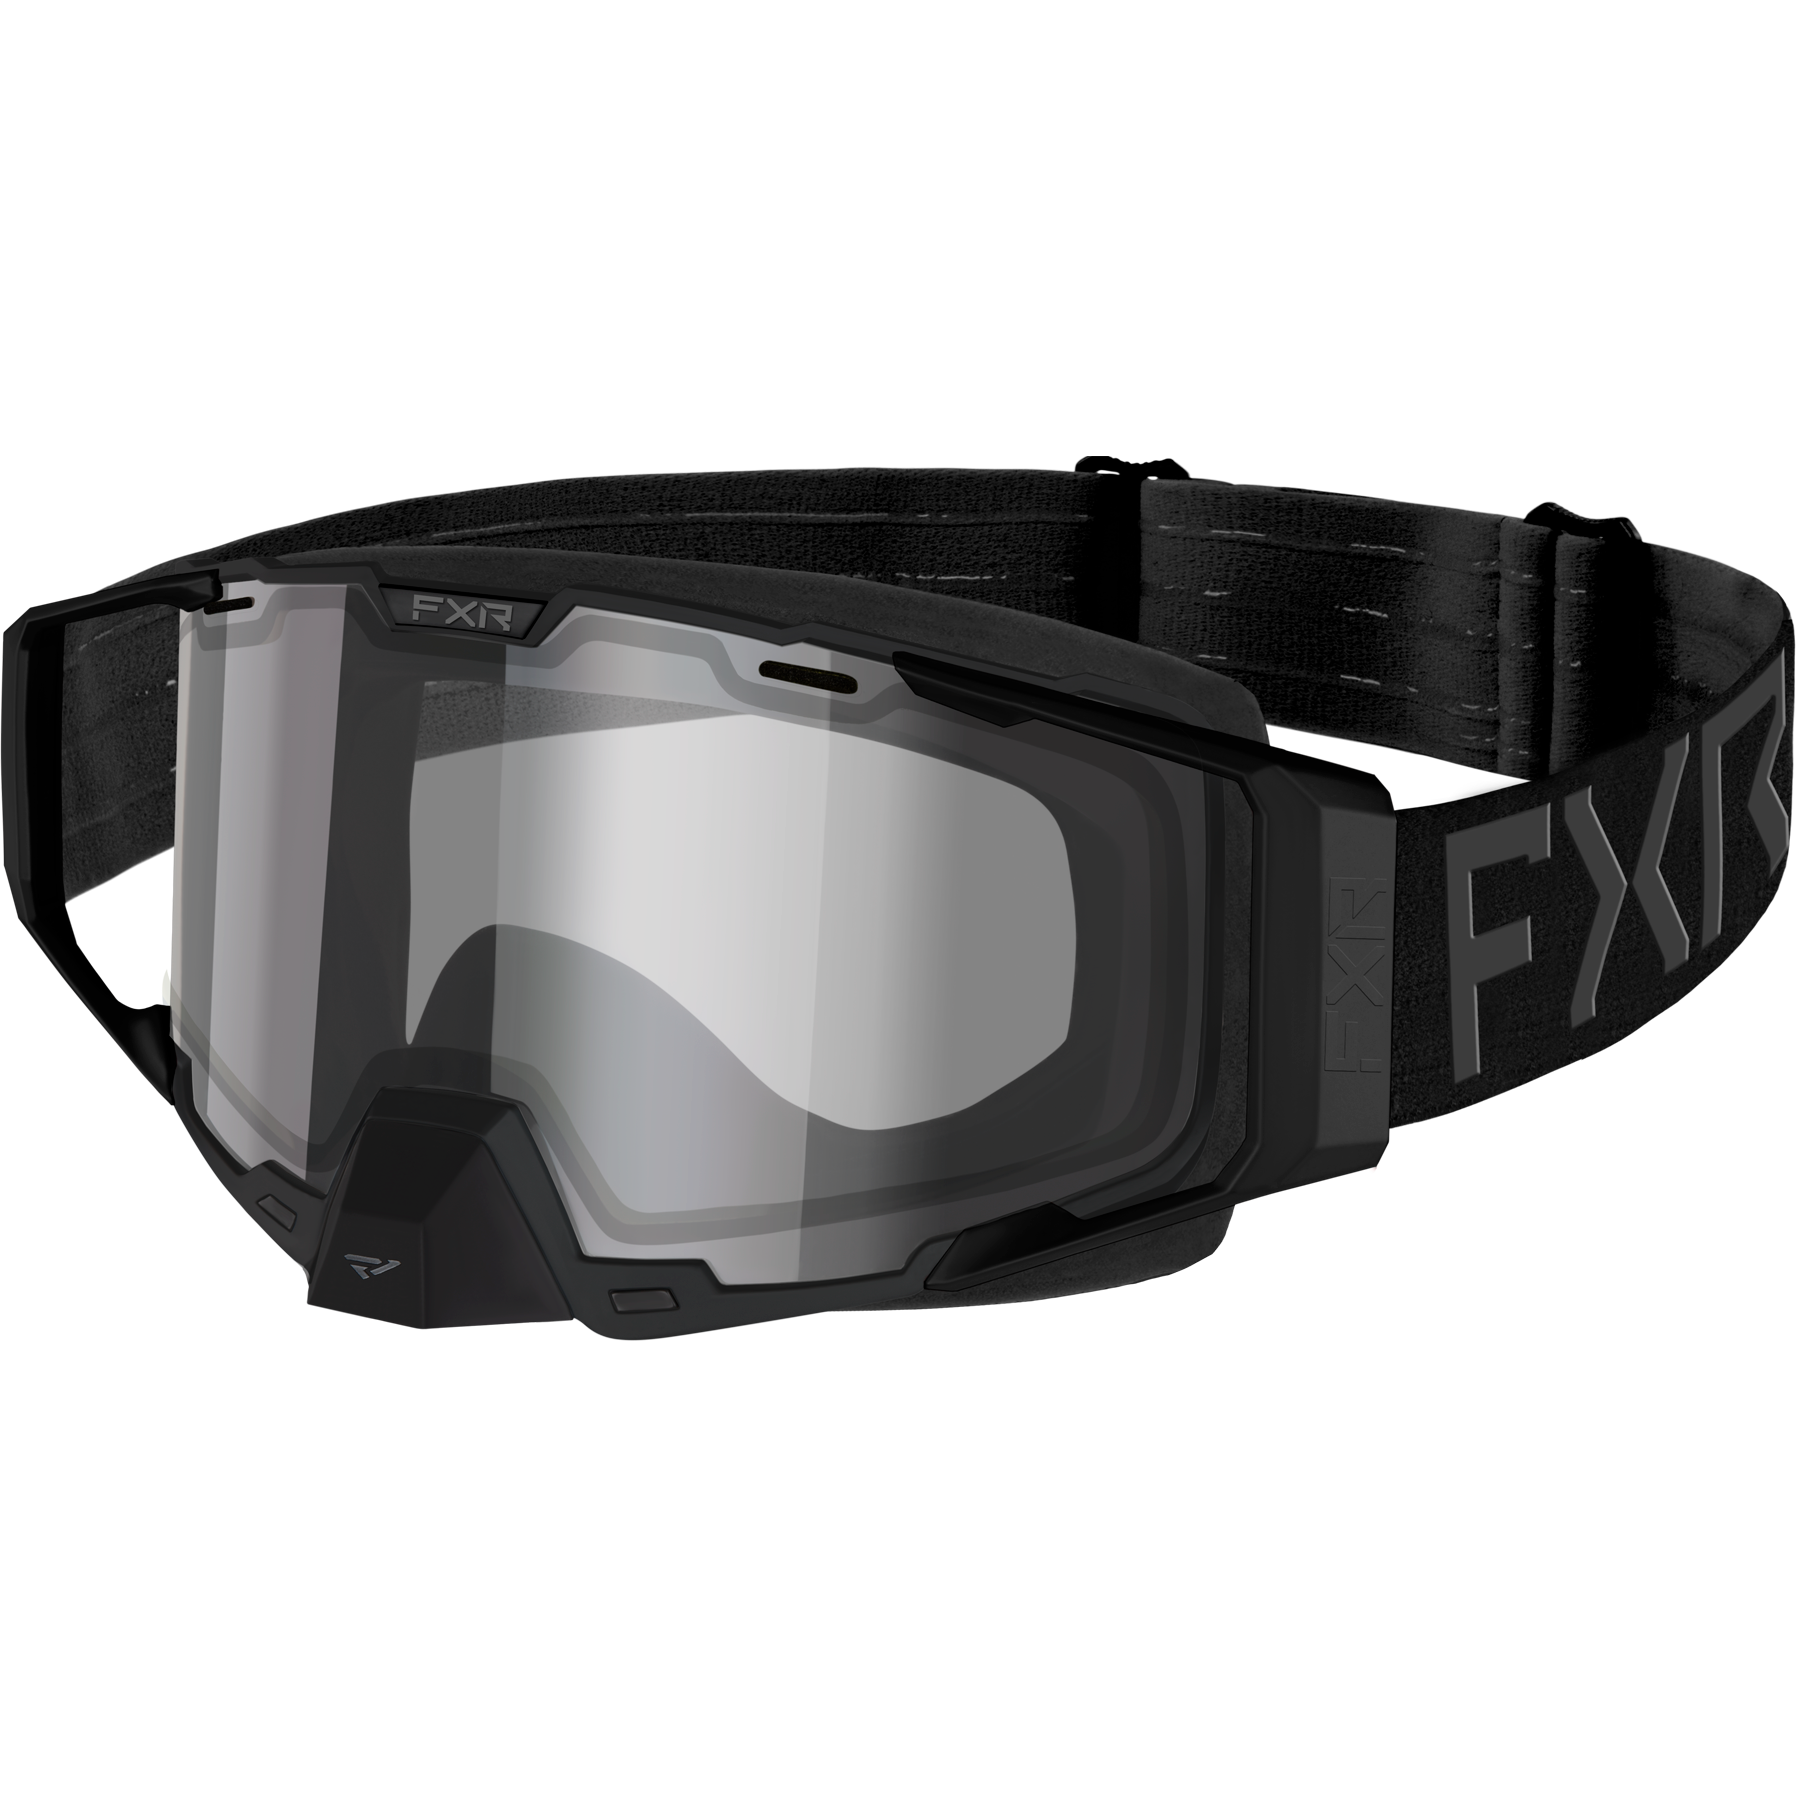 fxr racing goggles lens adult combat coldstop clear